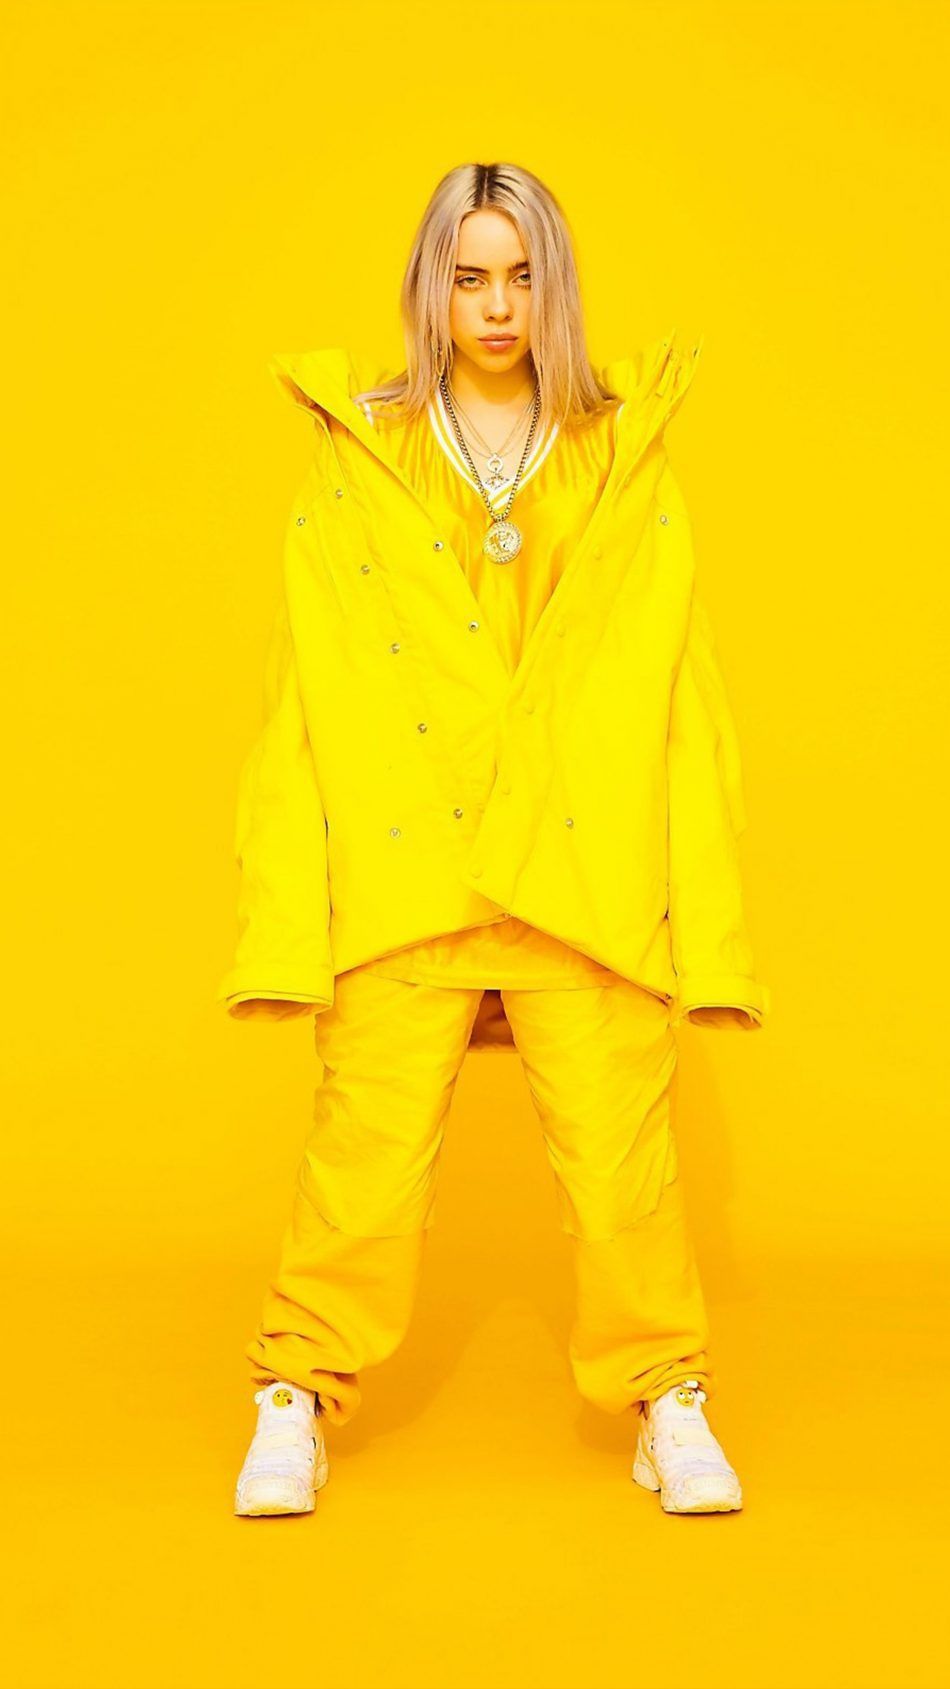 Billie Eilish Yellow Background. Billie eilish, Yellow background